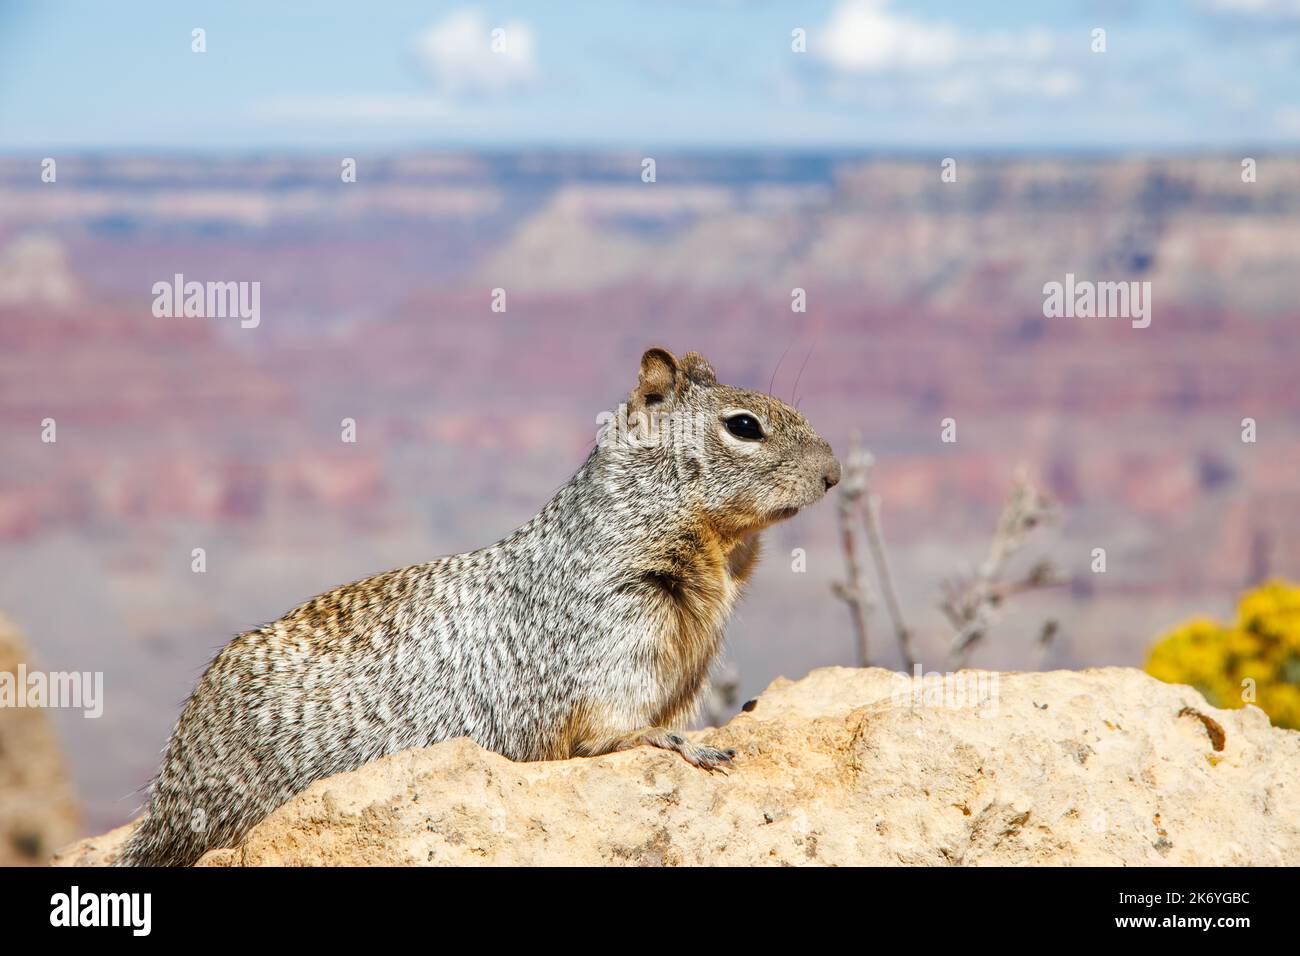 Écureuil sur le rocher dans le parc national du Grand Canyon en Arizona. Faune du Gran Canyon. Rive sud du Grand Canyon Banque D'Images